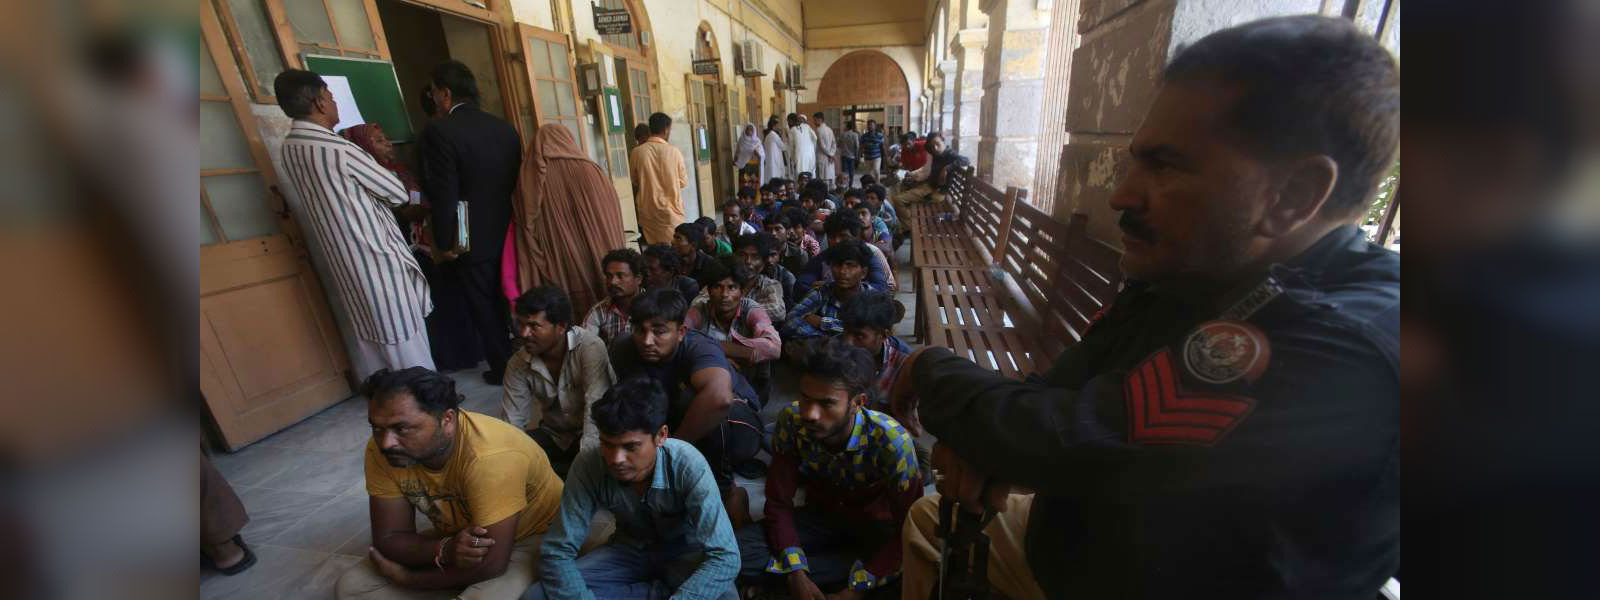 Pakistan releases 100 Indian prisoners